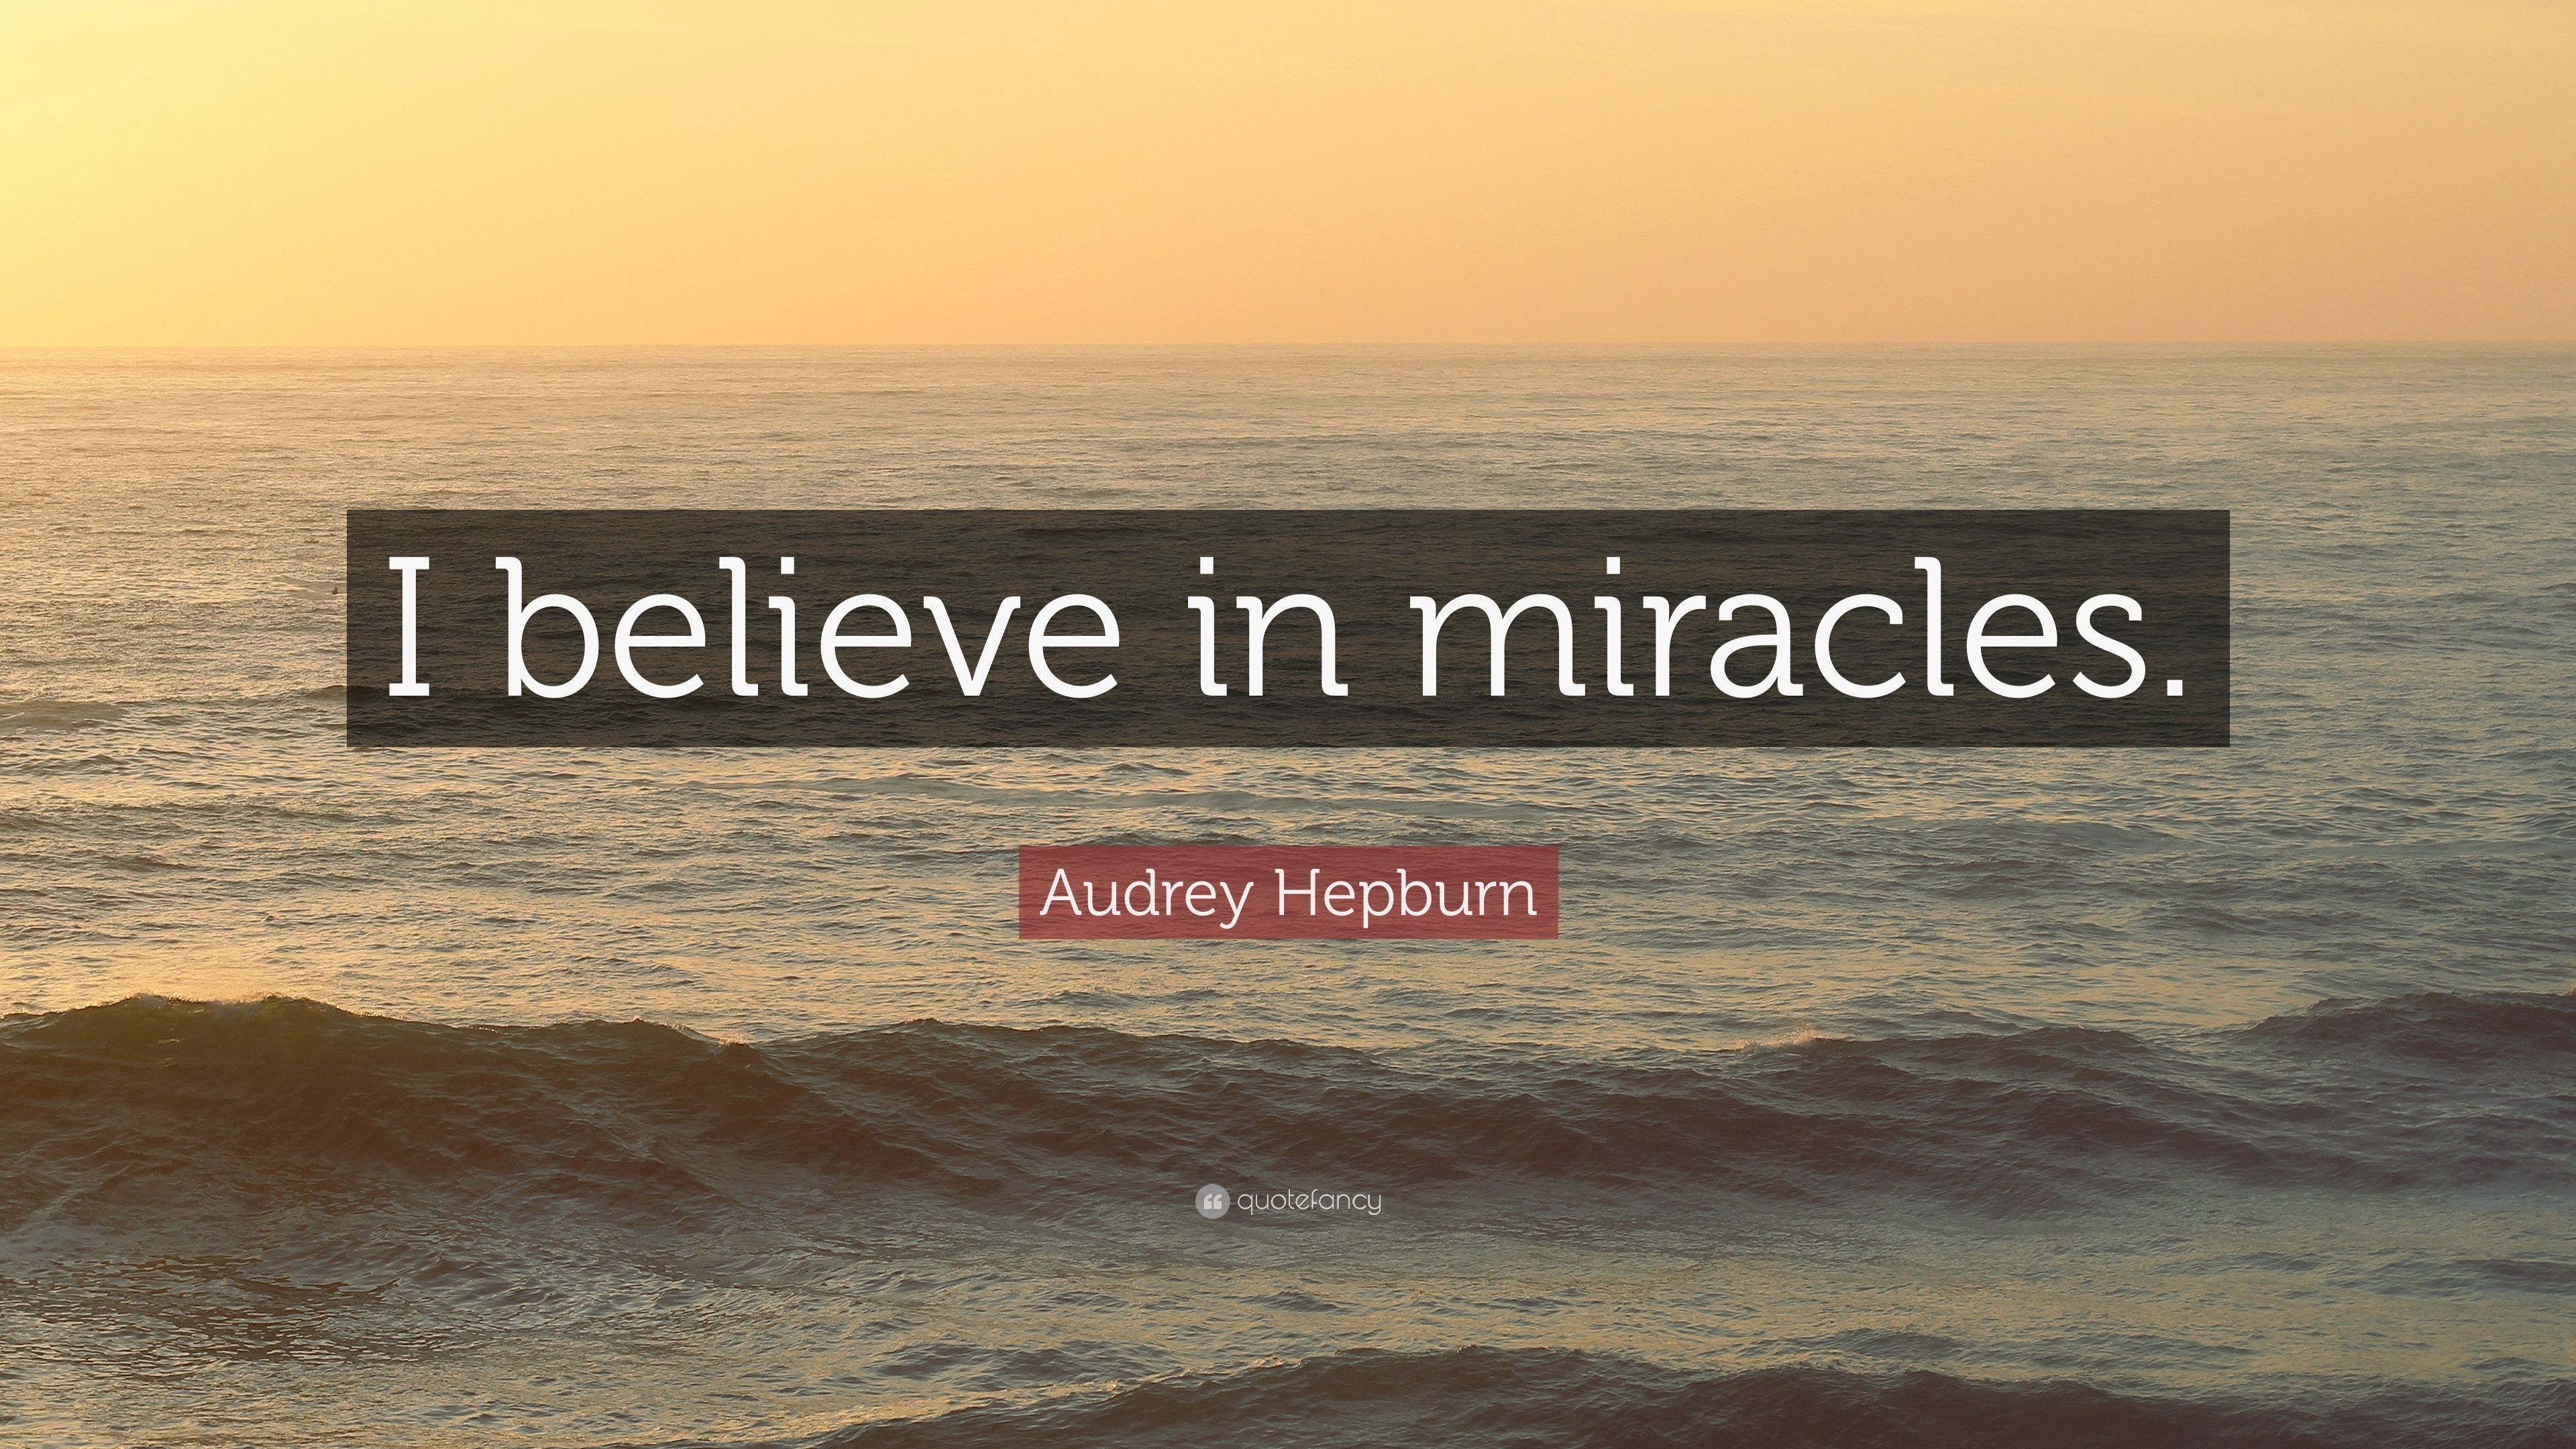 Audrey Hepburn Quote: “I believe in miracles.” (10 wallpaper)